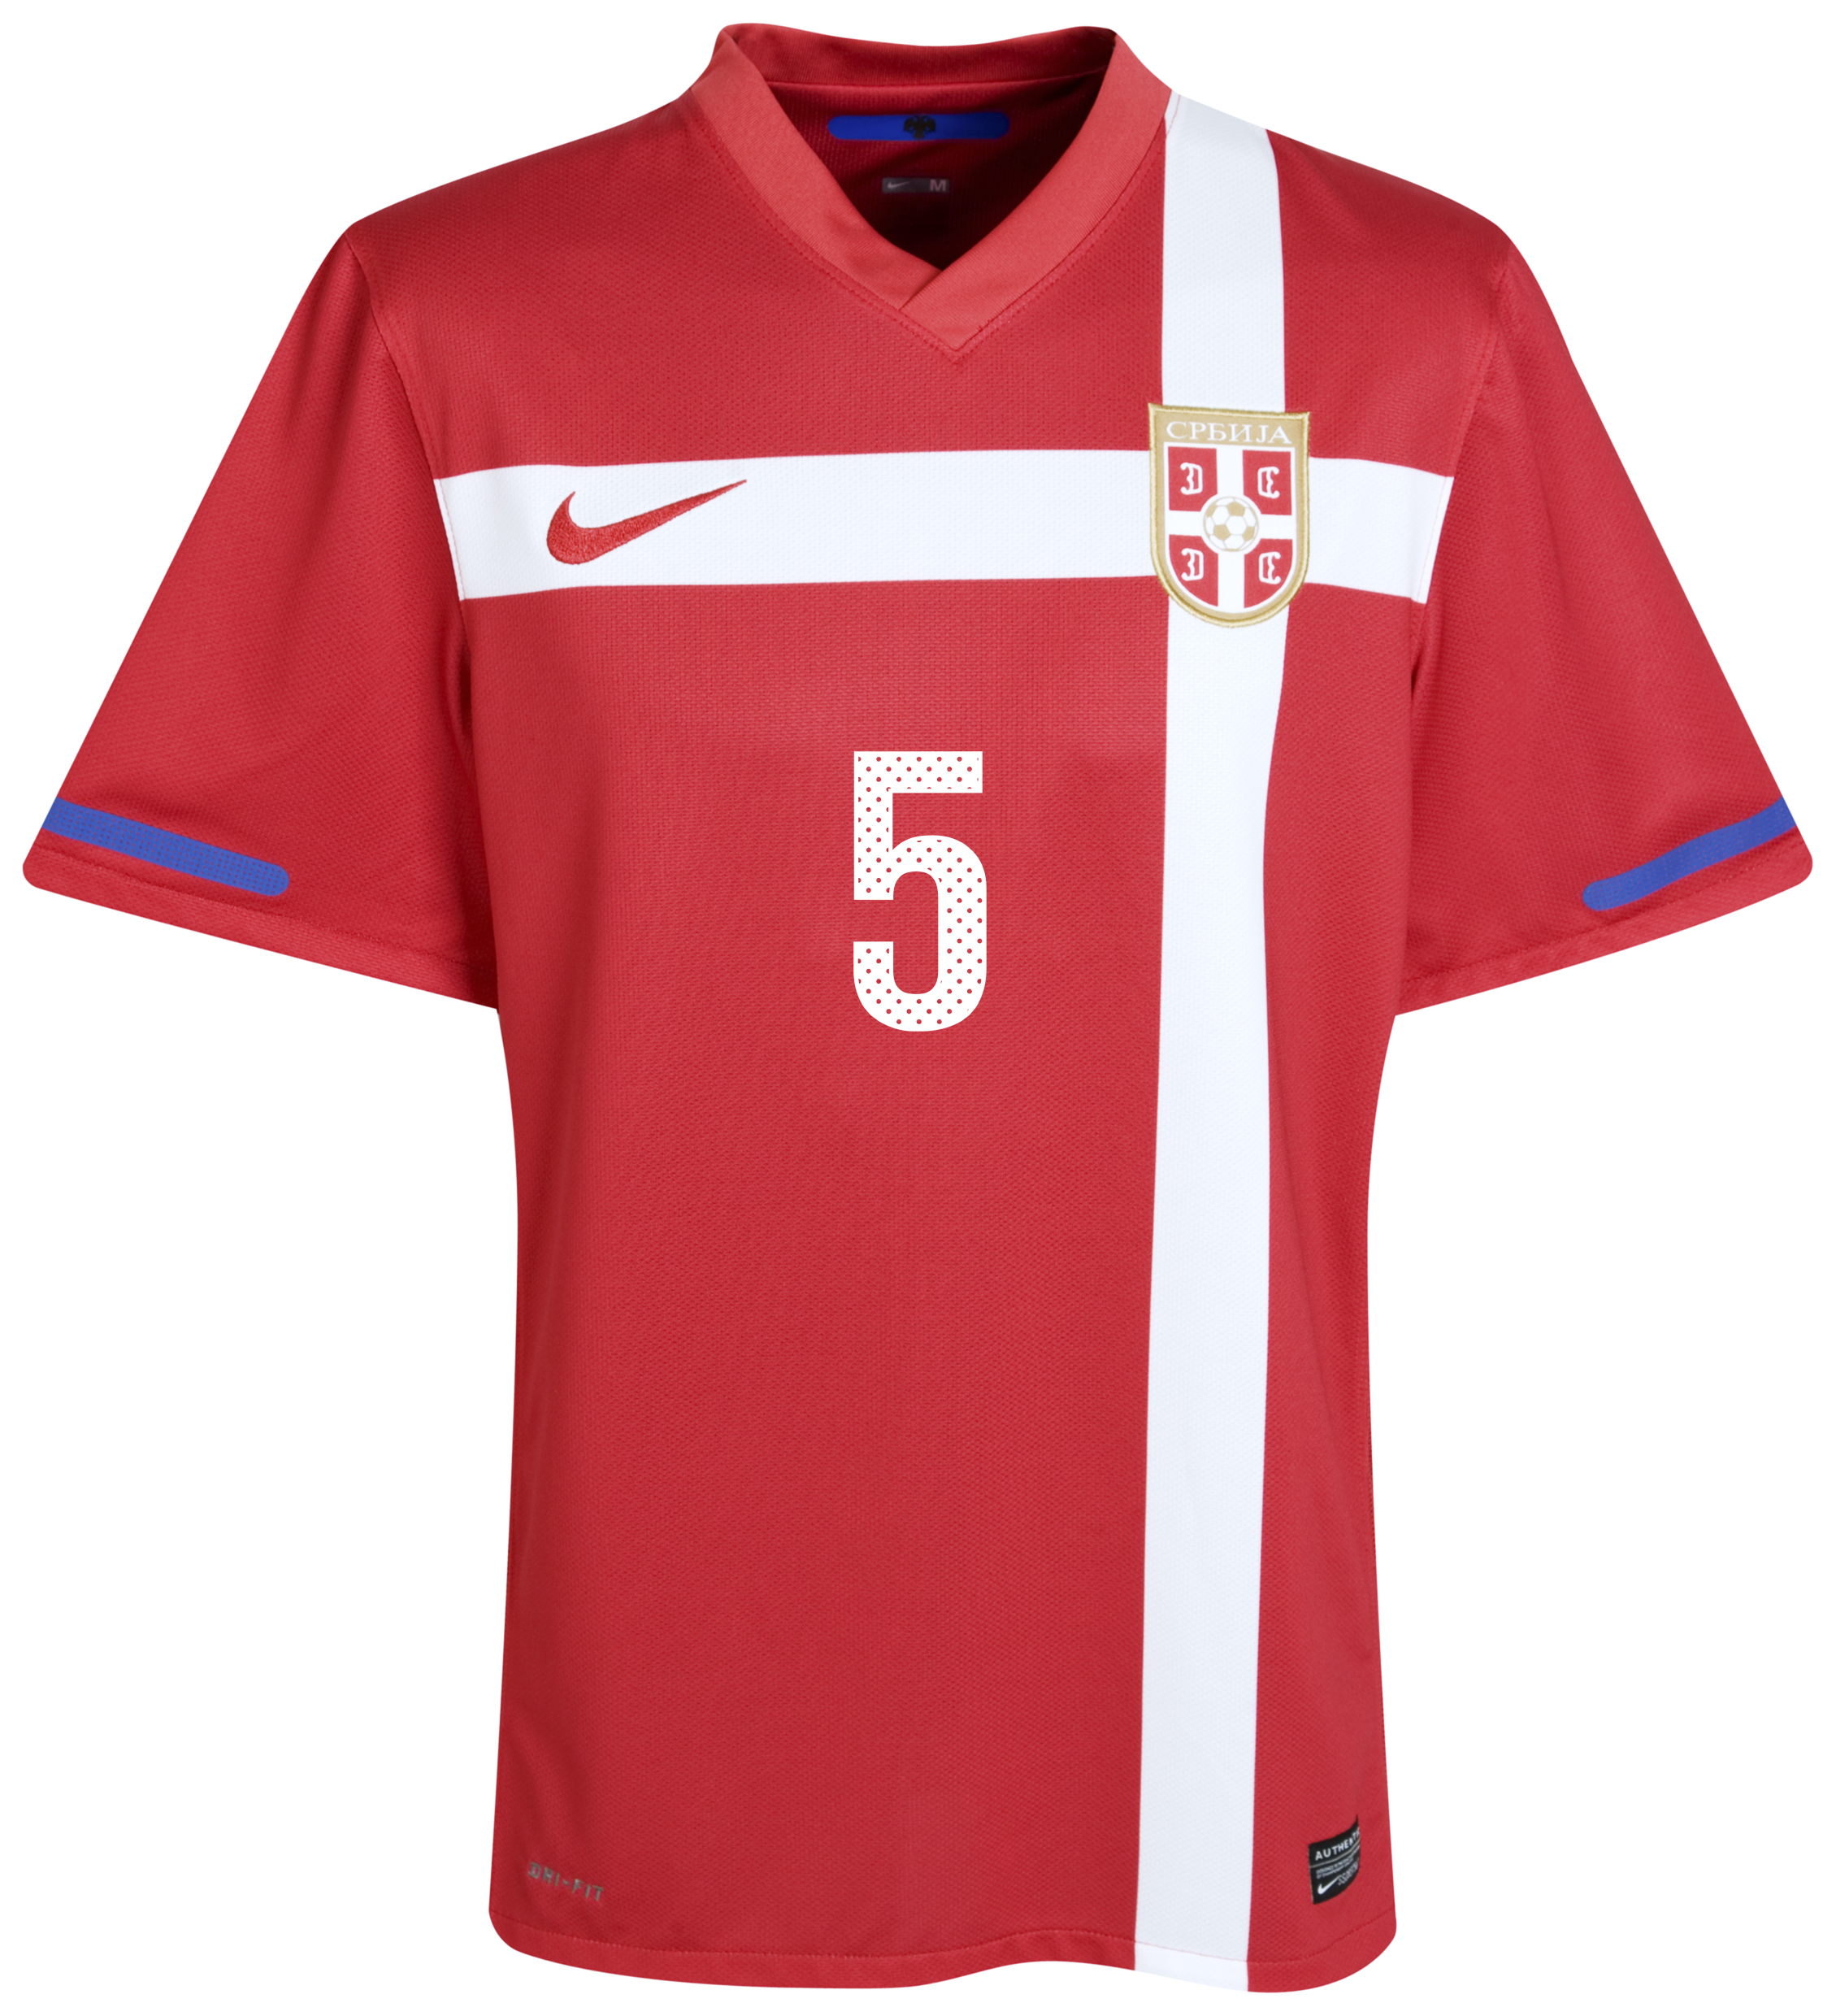 ملابس المنتخبات لكأس العالم 2010 Kb-71658a